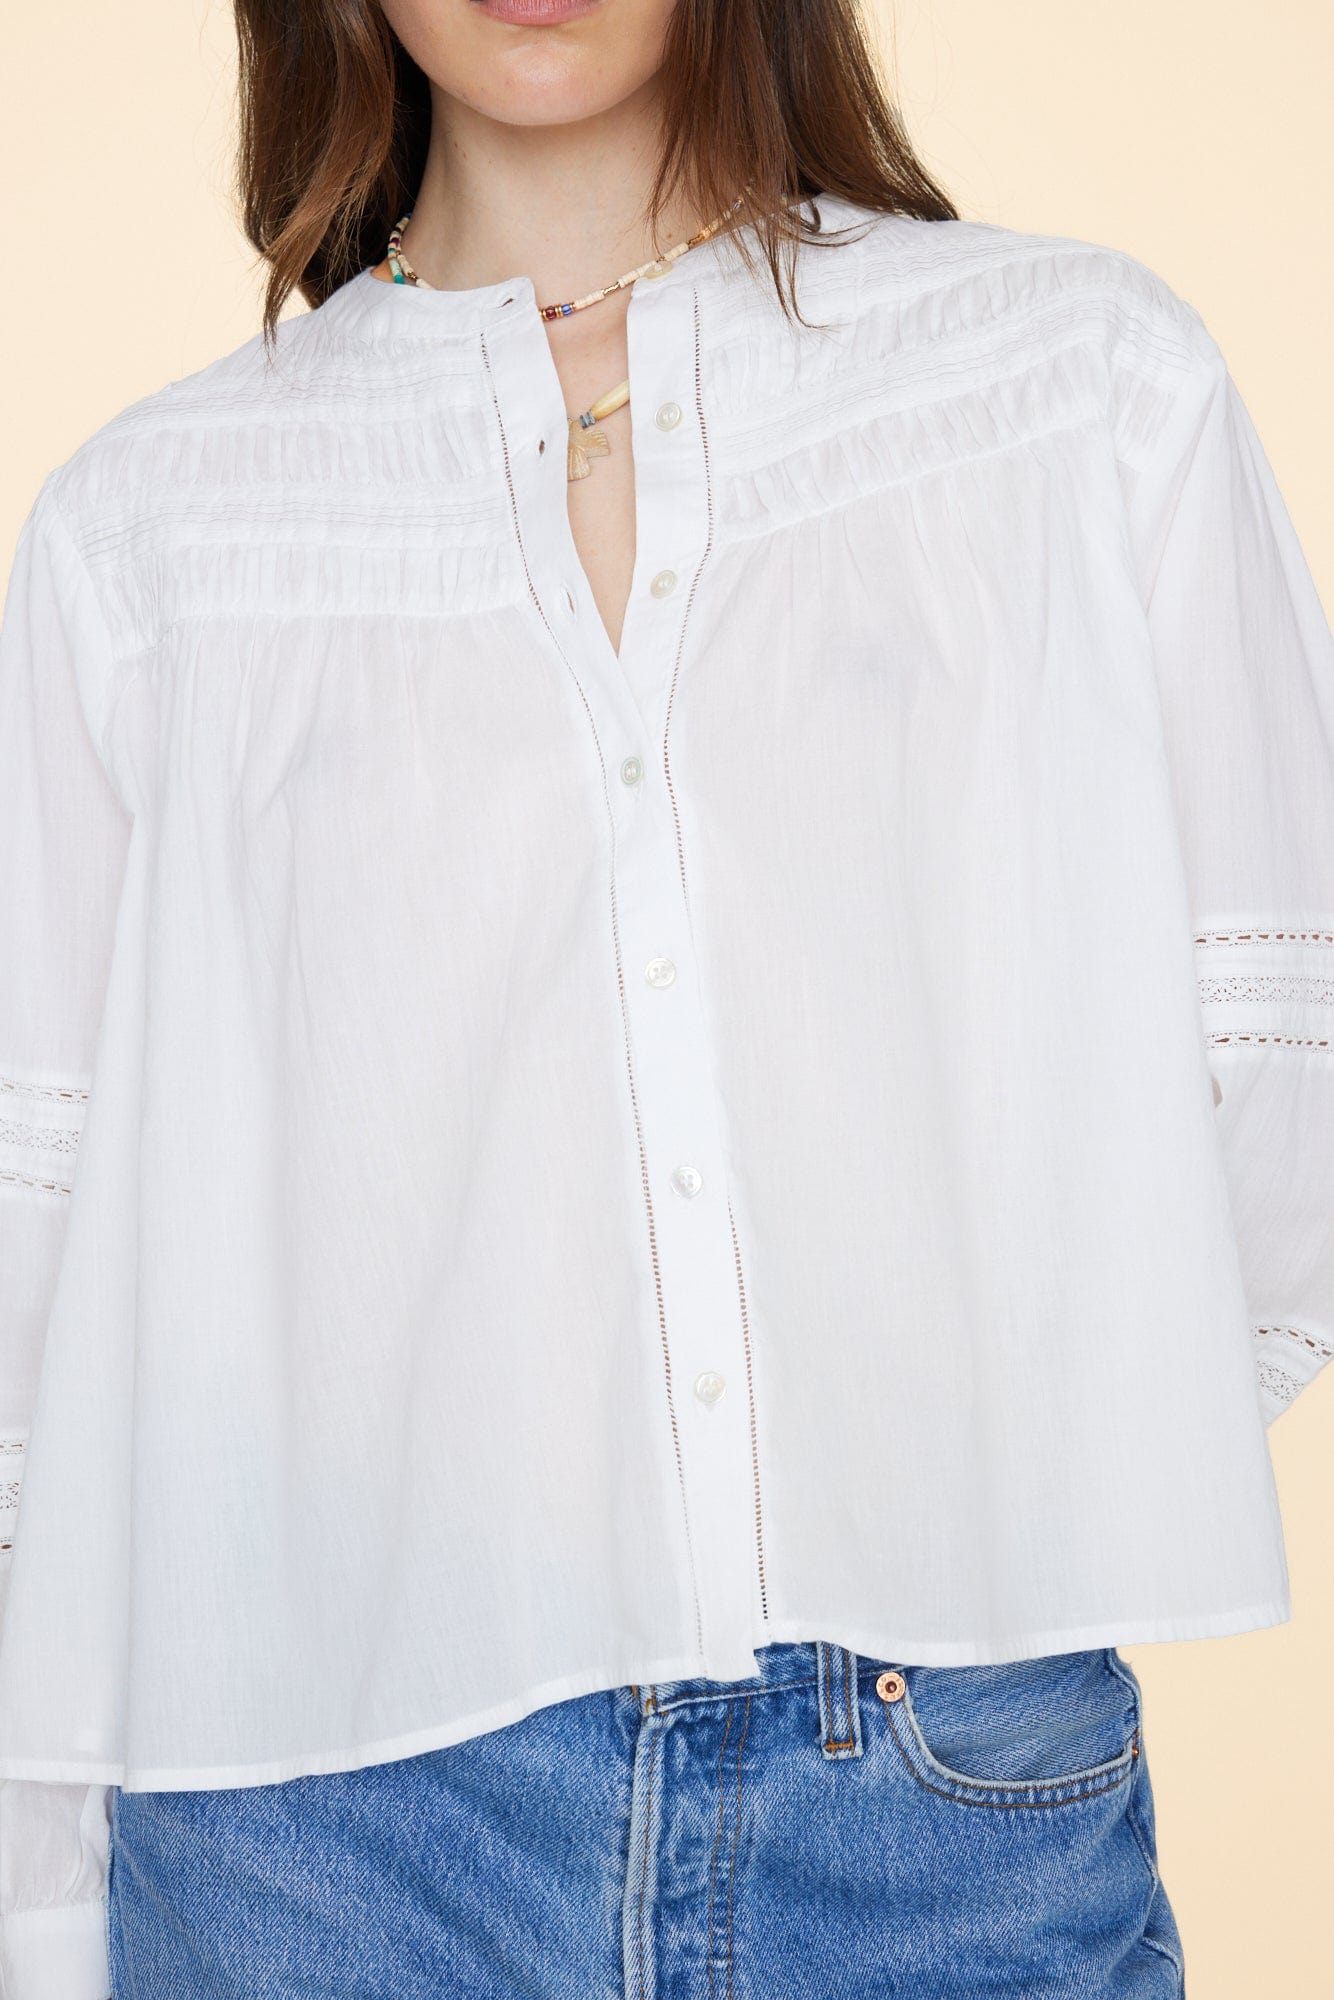 Xirena Shirt White Allie Shirt